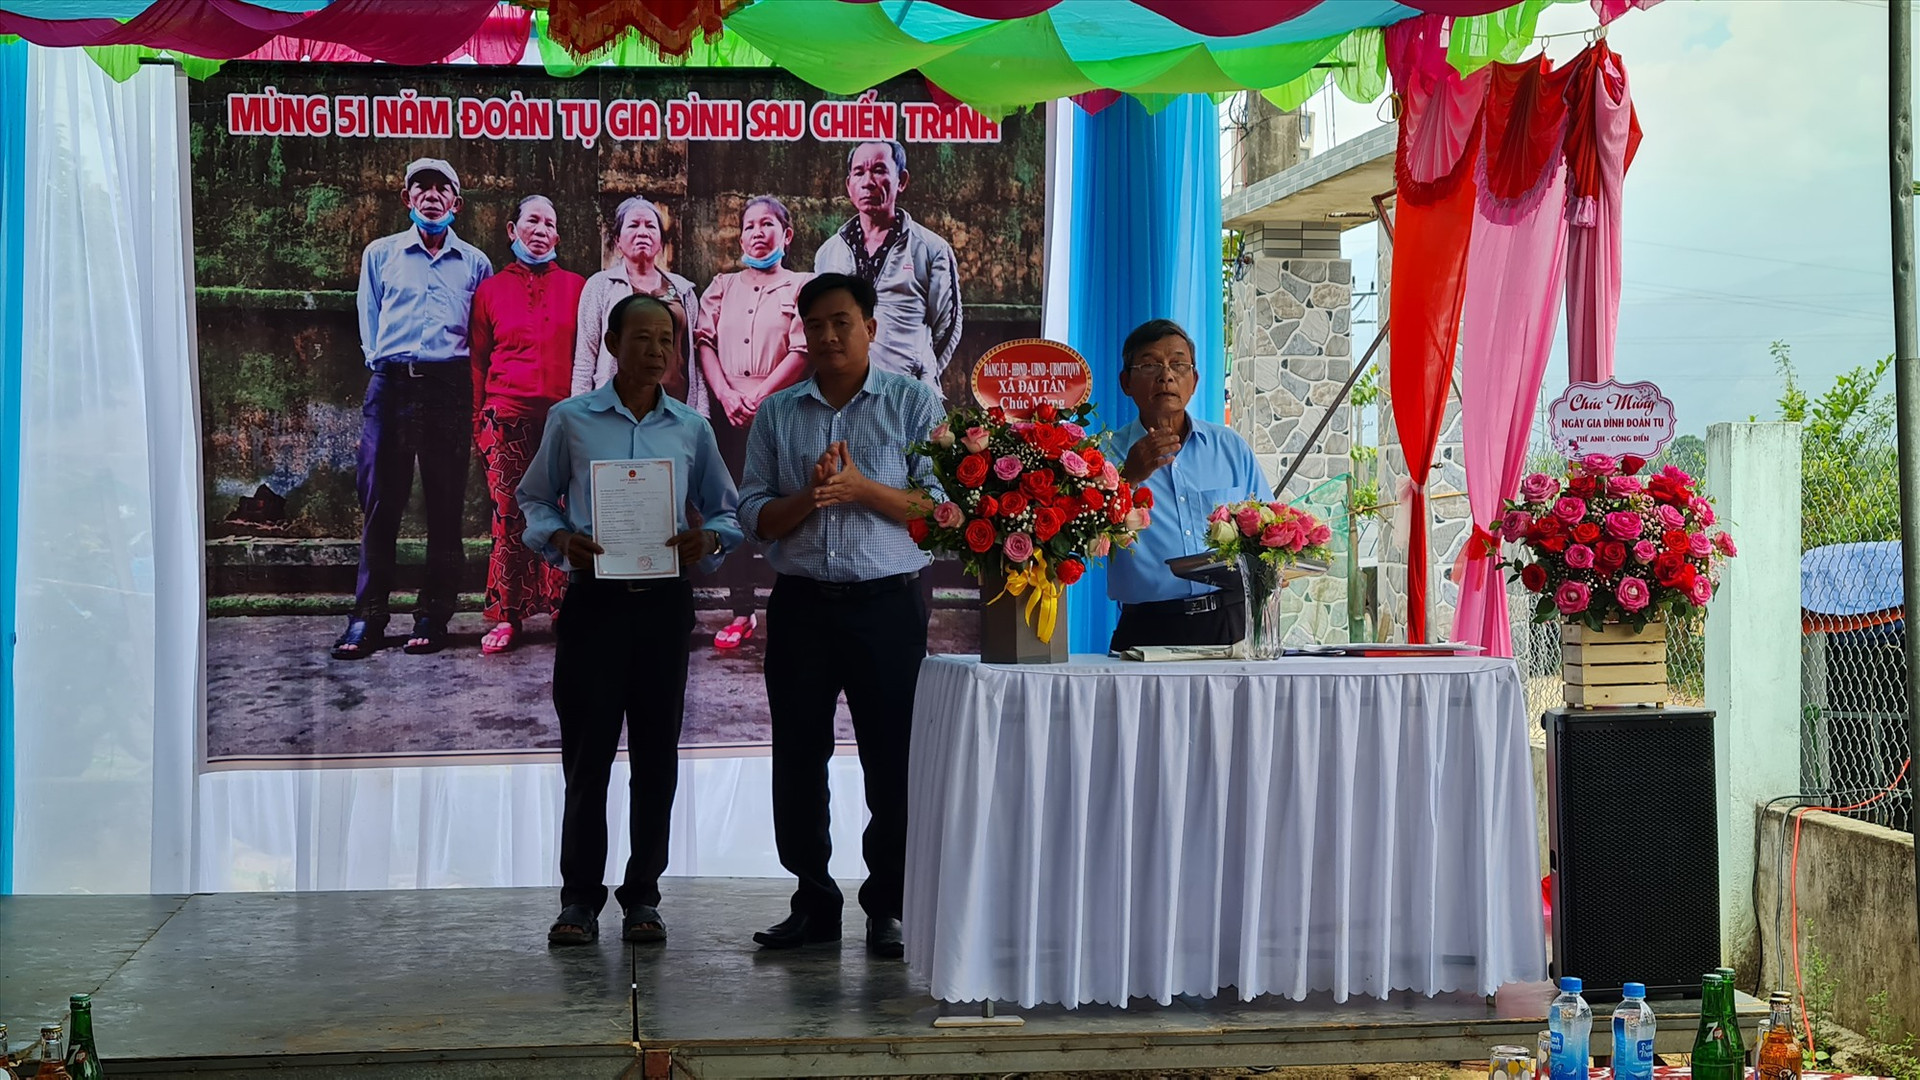 Lãnh đạo địa phương trao giấy khai sinh cho một trong số 5 người con của liệt sĩ Trần Khế và Lê Thị Lục. Ảnh: H.LIÊN